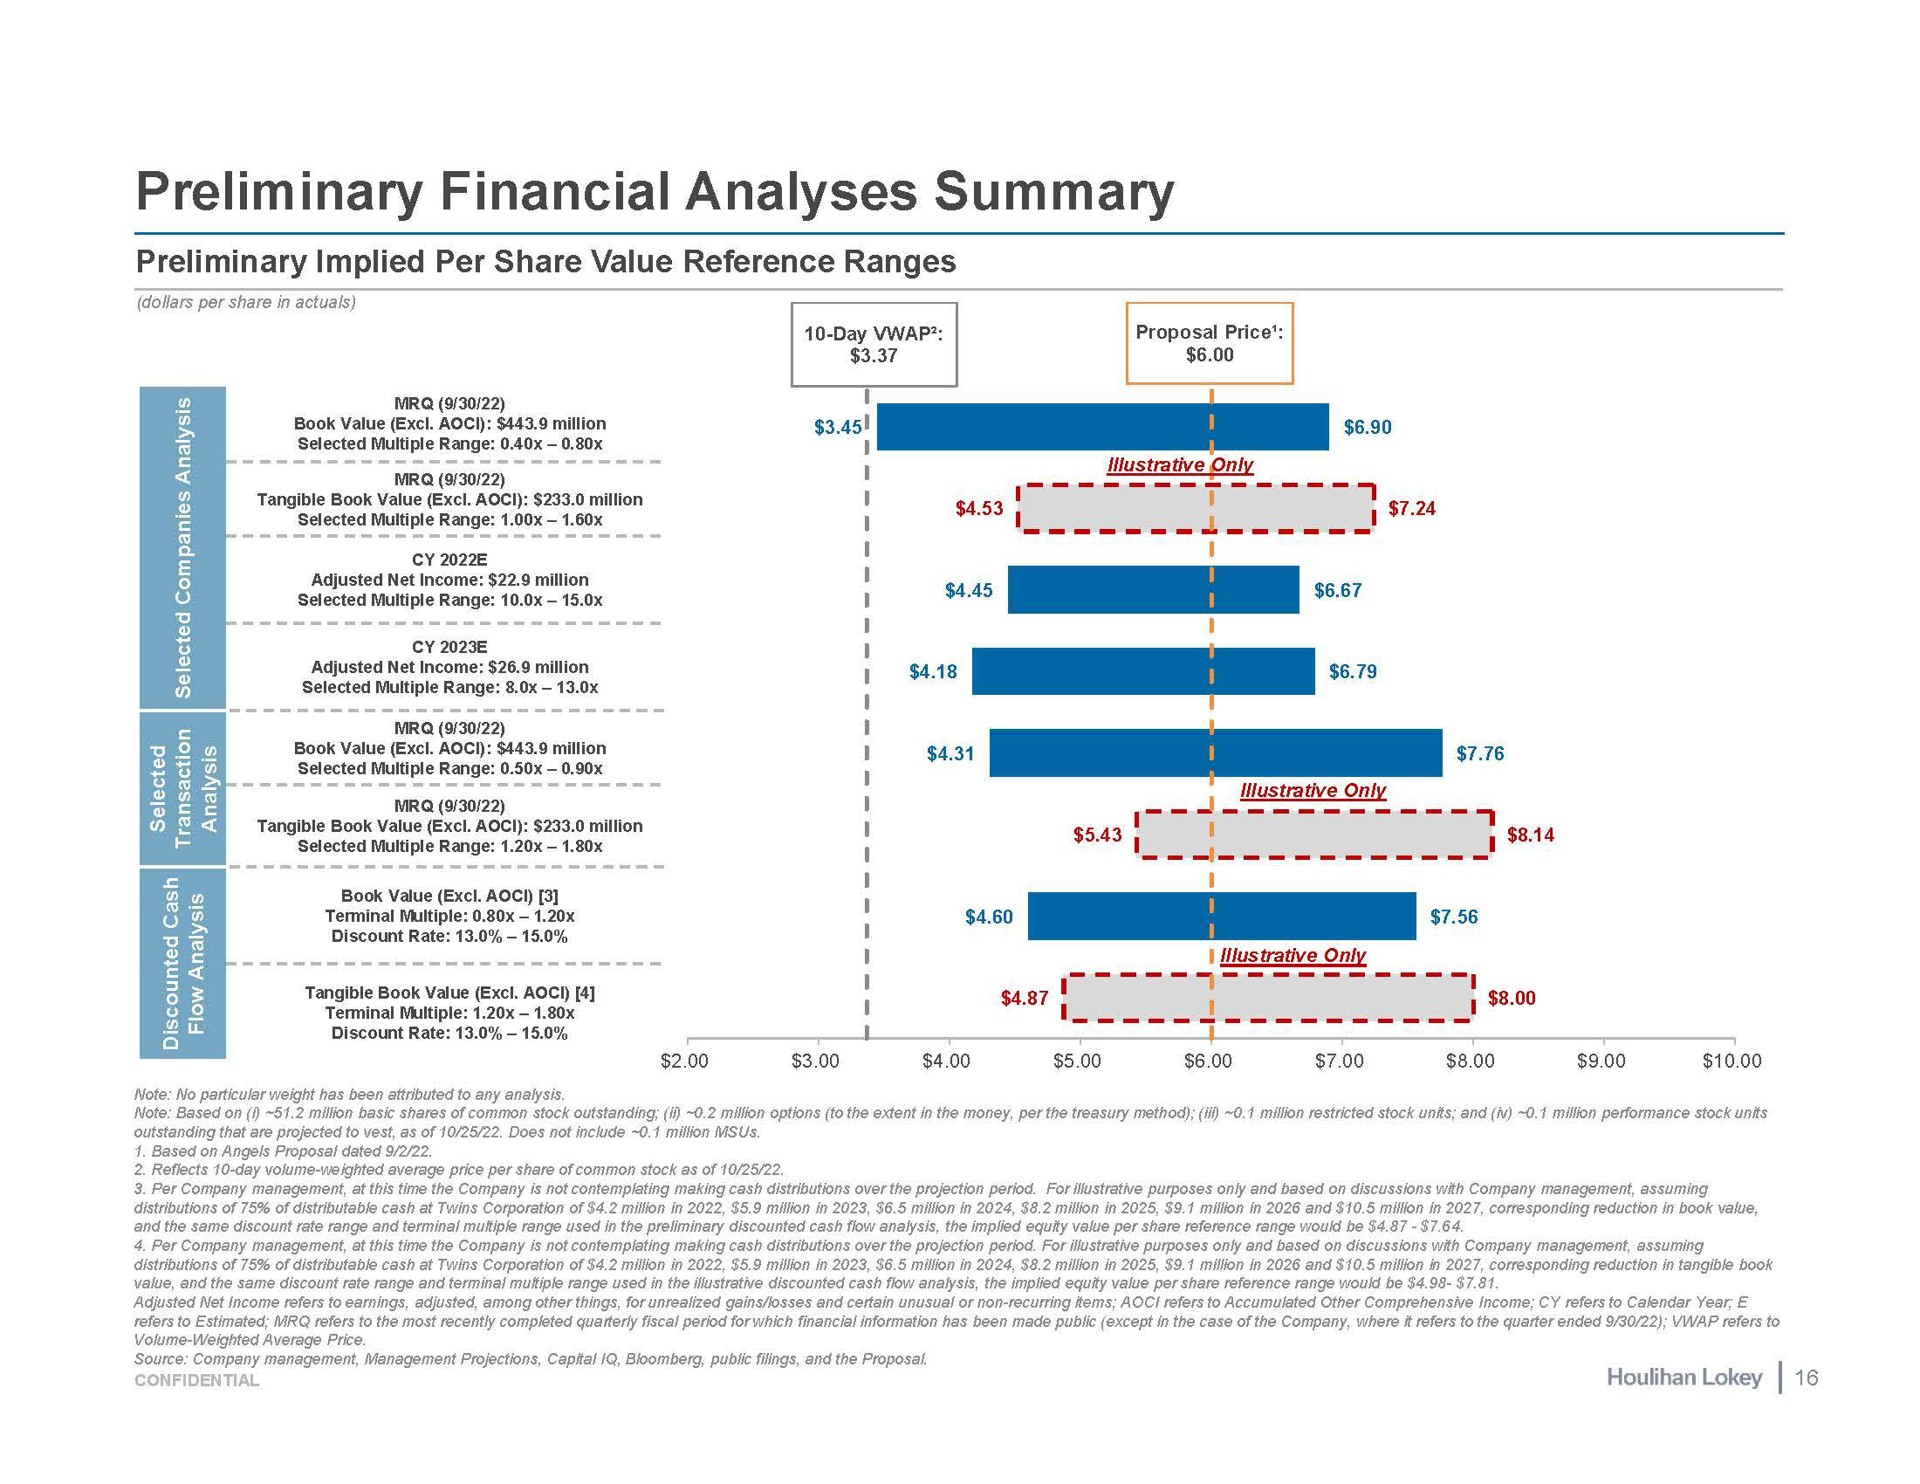 preliminary financial analyses summary | Houlihan Lokey